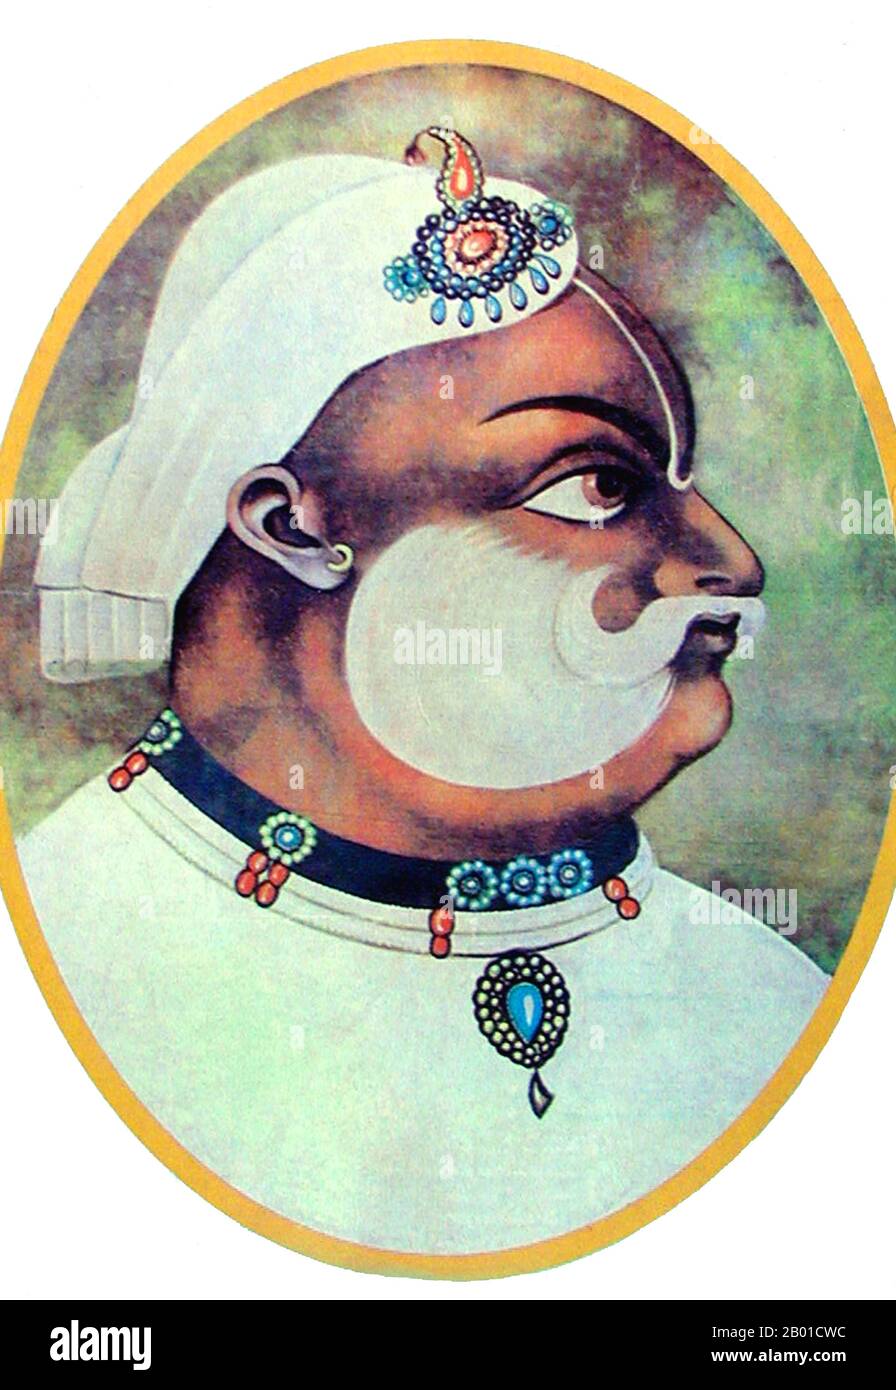 Indien: Maharaja Suraj Mal (13. Februar 1707 - 25. Dezember 1763), Herrscher von Bharatpur in Rajasthan (r. 1755-1763). Miniatur-Hochformat, 1763. Maharaja Suraj Mal wurde von einem zeitgenössischen Historiker als "der Plato des Jat-Volkes" und von einem modernen Schriftsteller als der "Jat Ulysses" beschrieben, wegen seiner politischen Scharfsinn, seines beständigen Intellekts und seiner klaren Vision. Er ist mit dem Aufstieg der Jat-Macht, seiner Liebe zur Literatur und seinen militärischen und diplomatischen Leistungen verbunden. Stockfoto